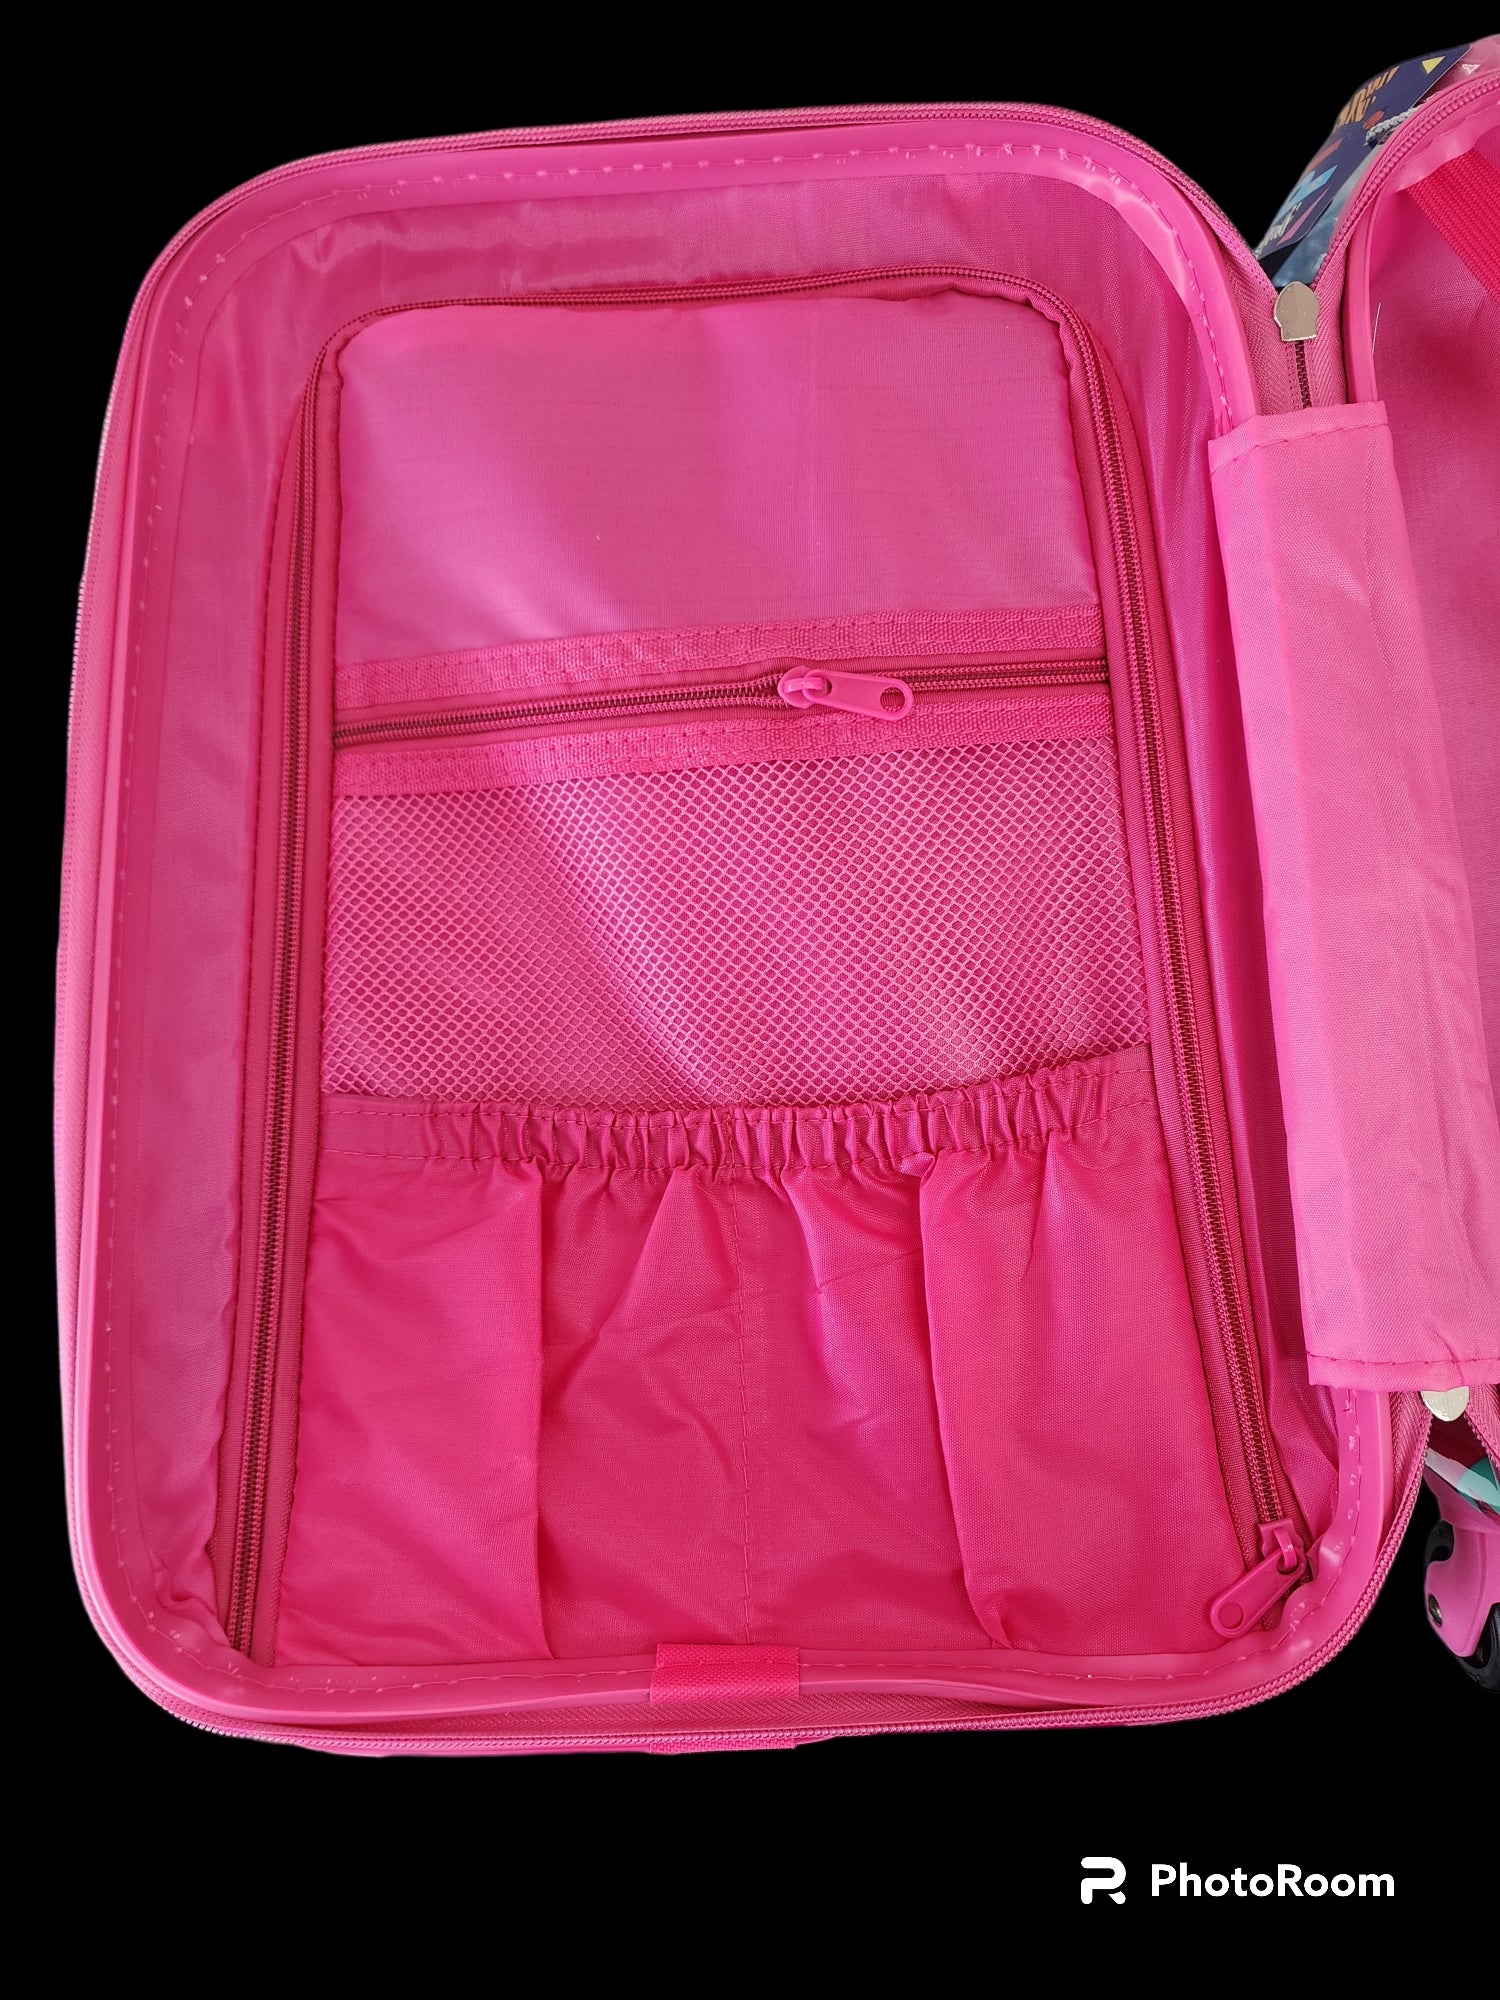 Kidz Bagz - 48cm Owl spinner suitcase - Pink-4